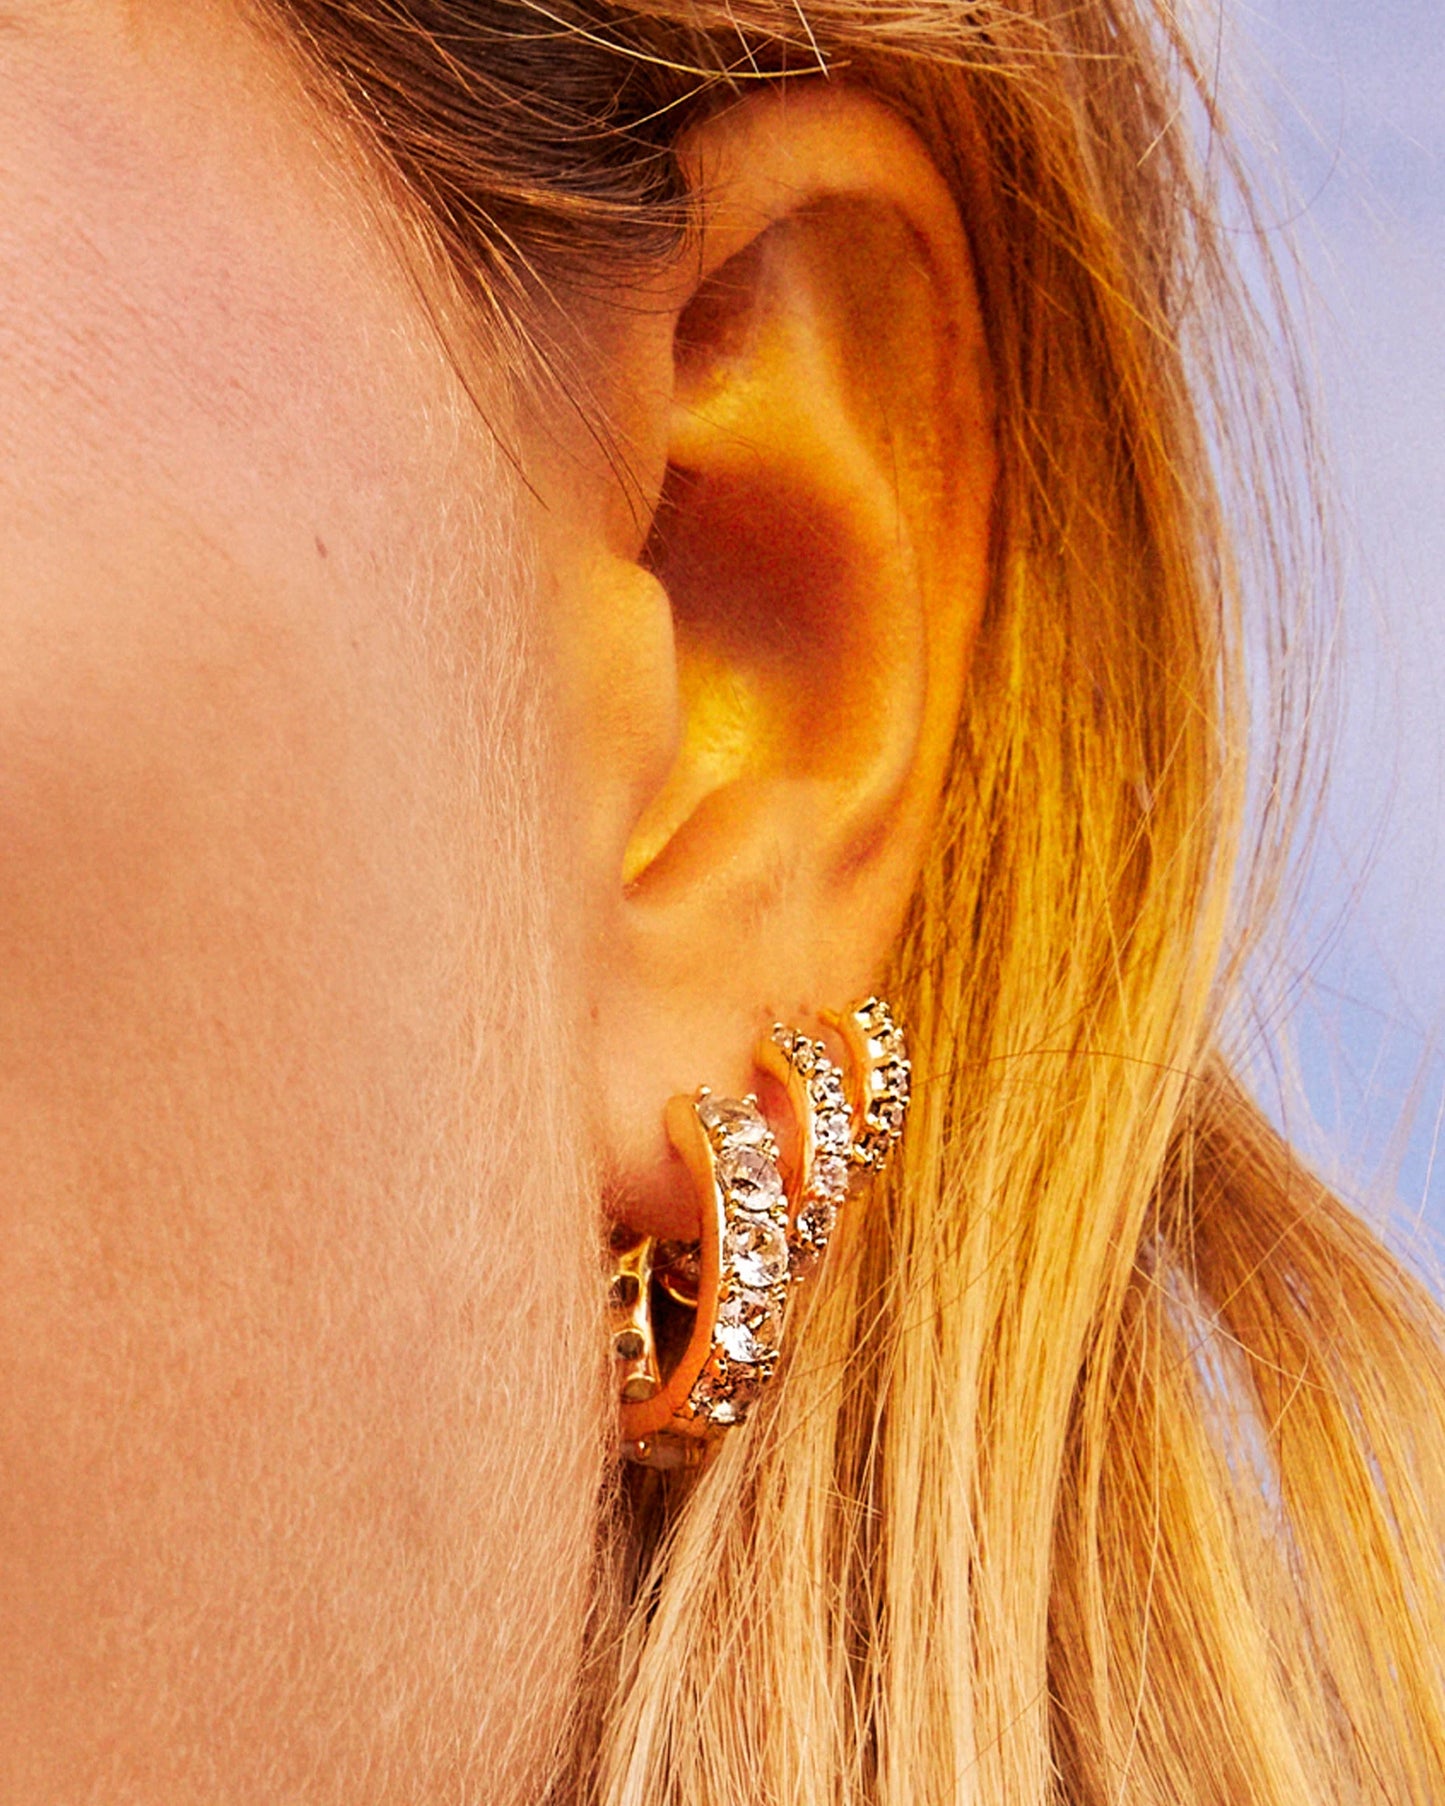 Kendra Scott Dira Crystal Huggie Earrings Gold White Crystal-Earrings-Kendra Scott-E00429GLD-The Twisted Chandelier